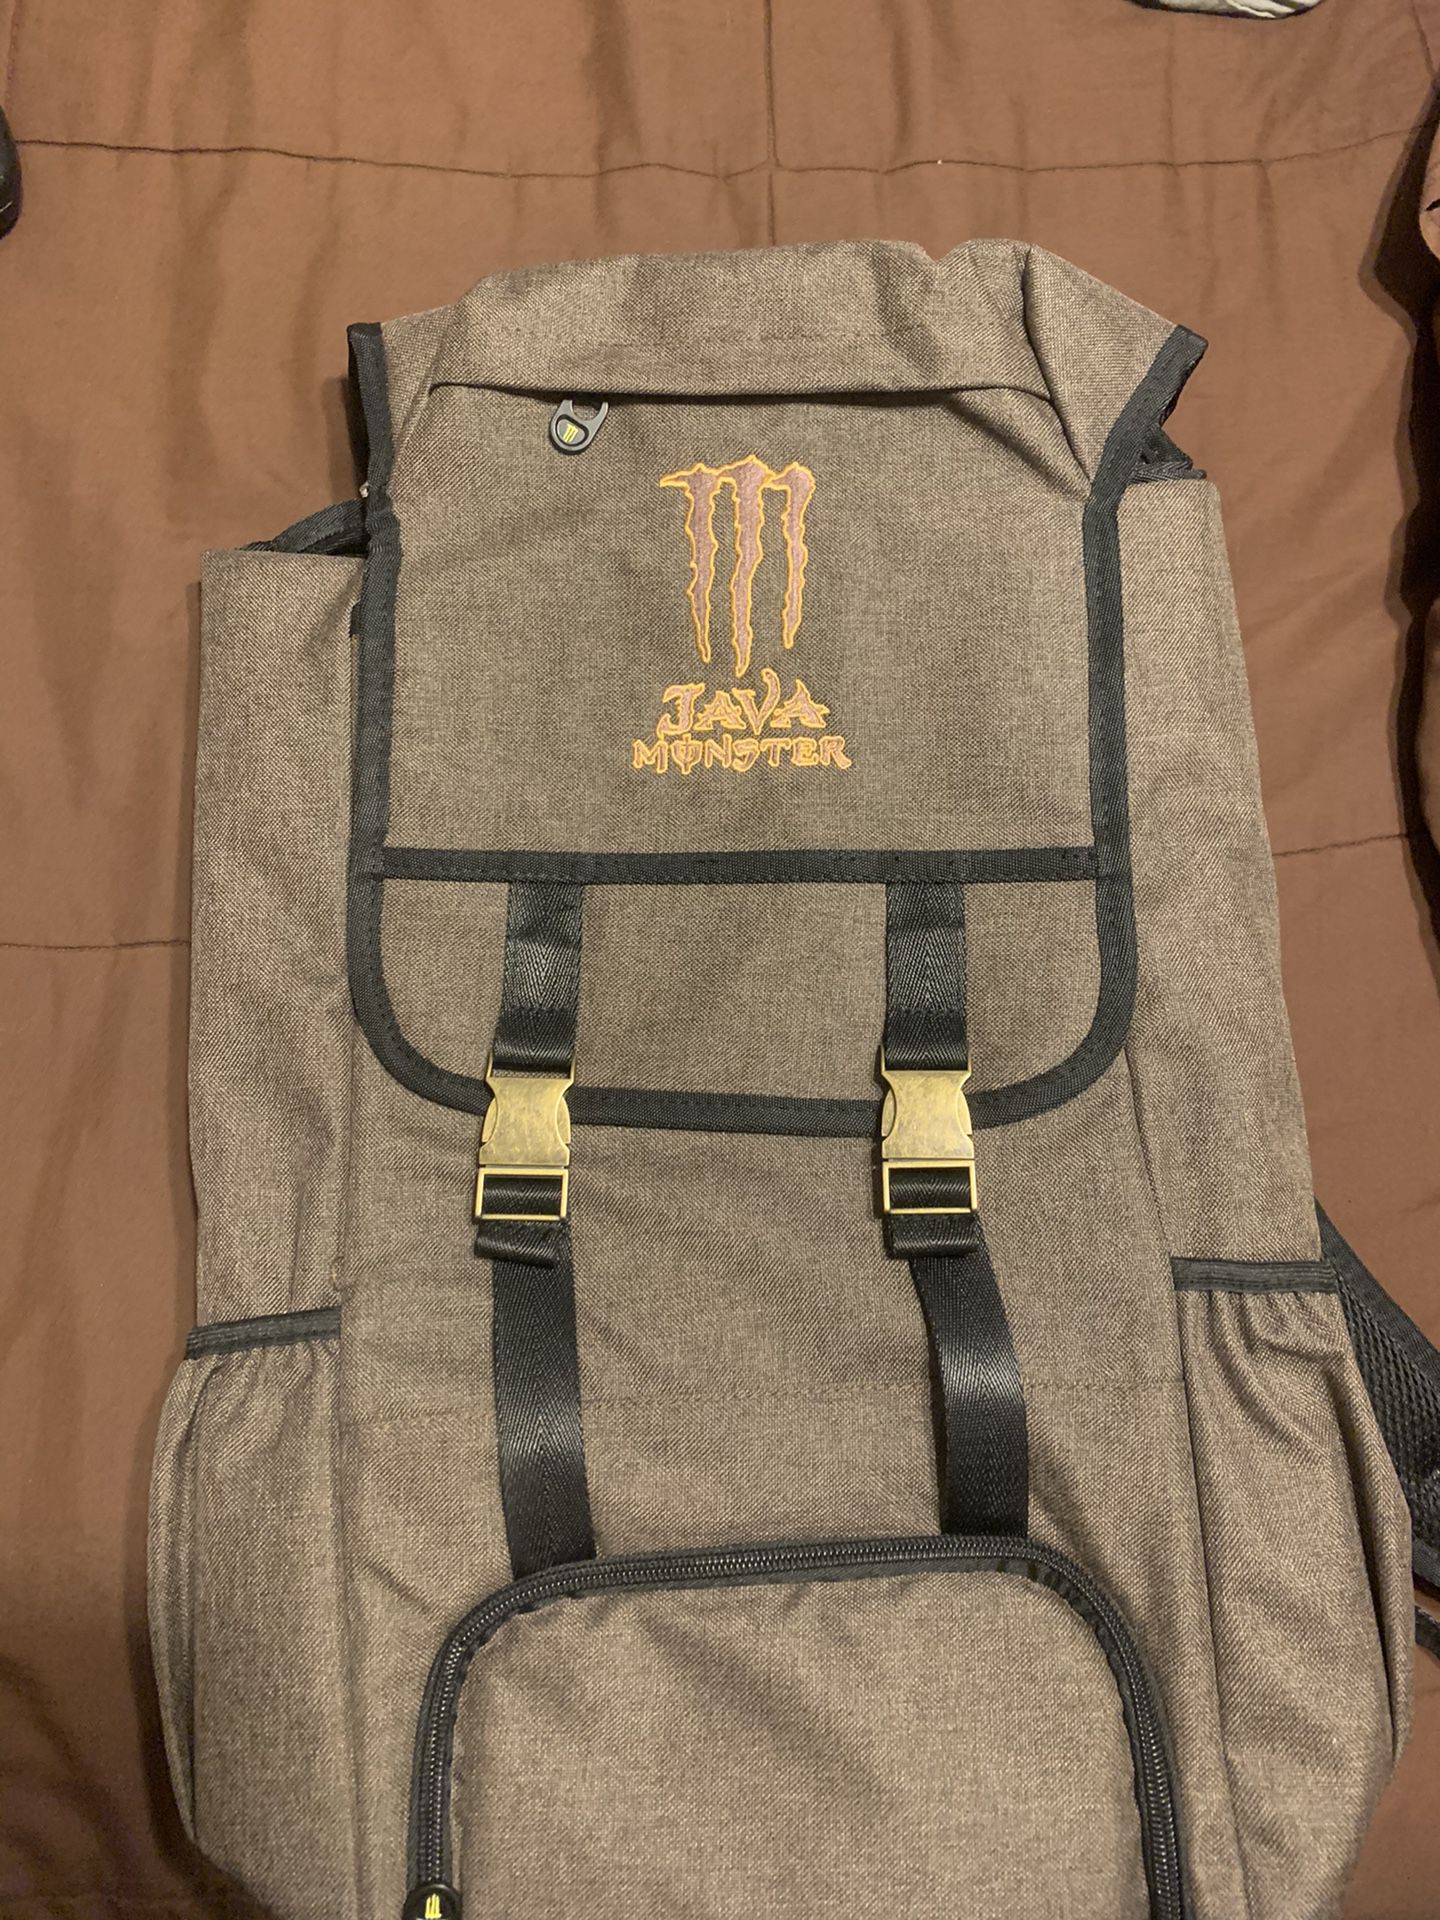 Monster cooler backpack